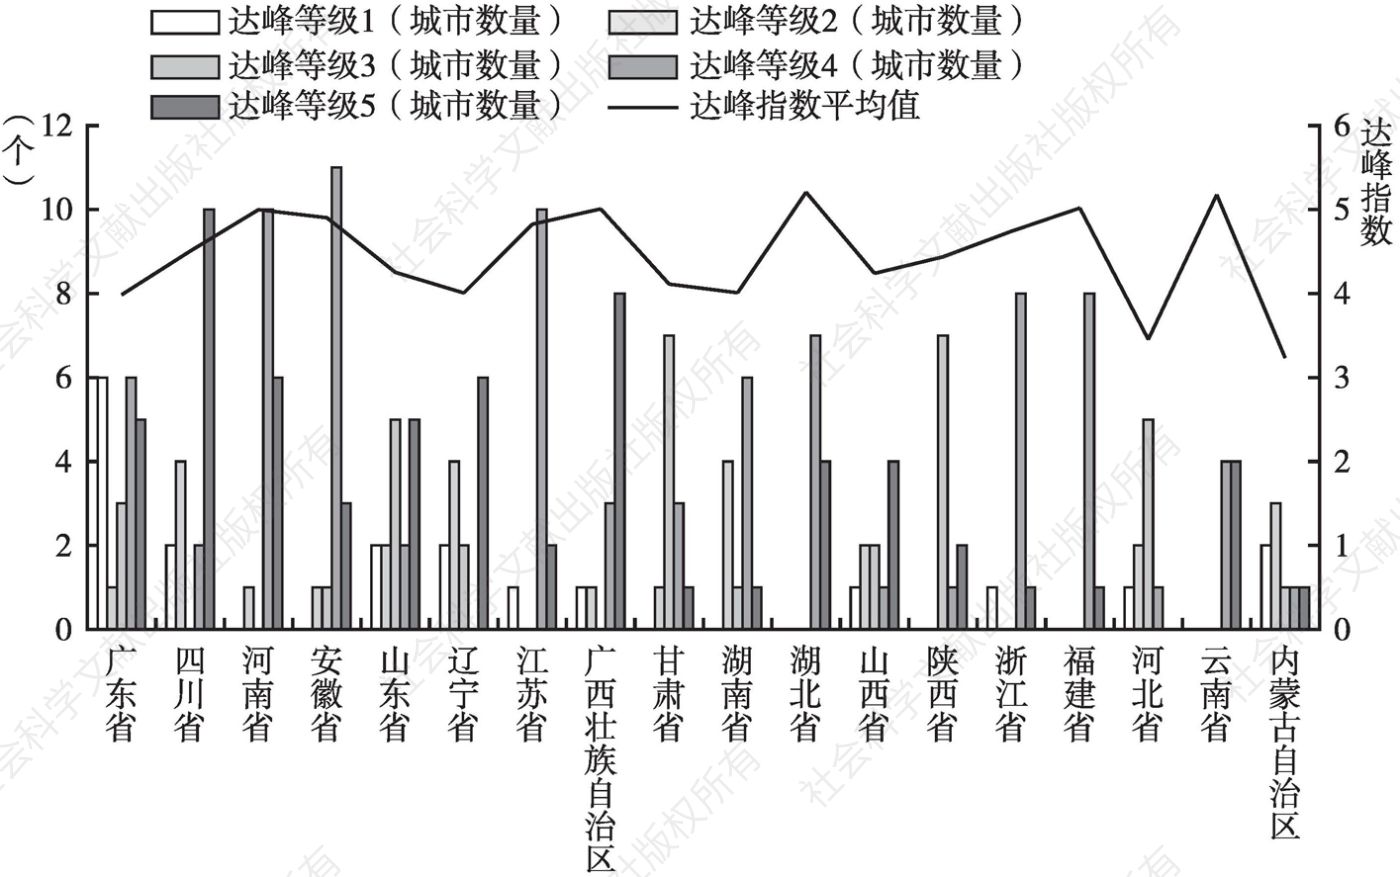 图15 中国部分省区达峰指数级别分布